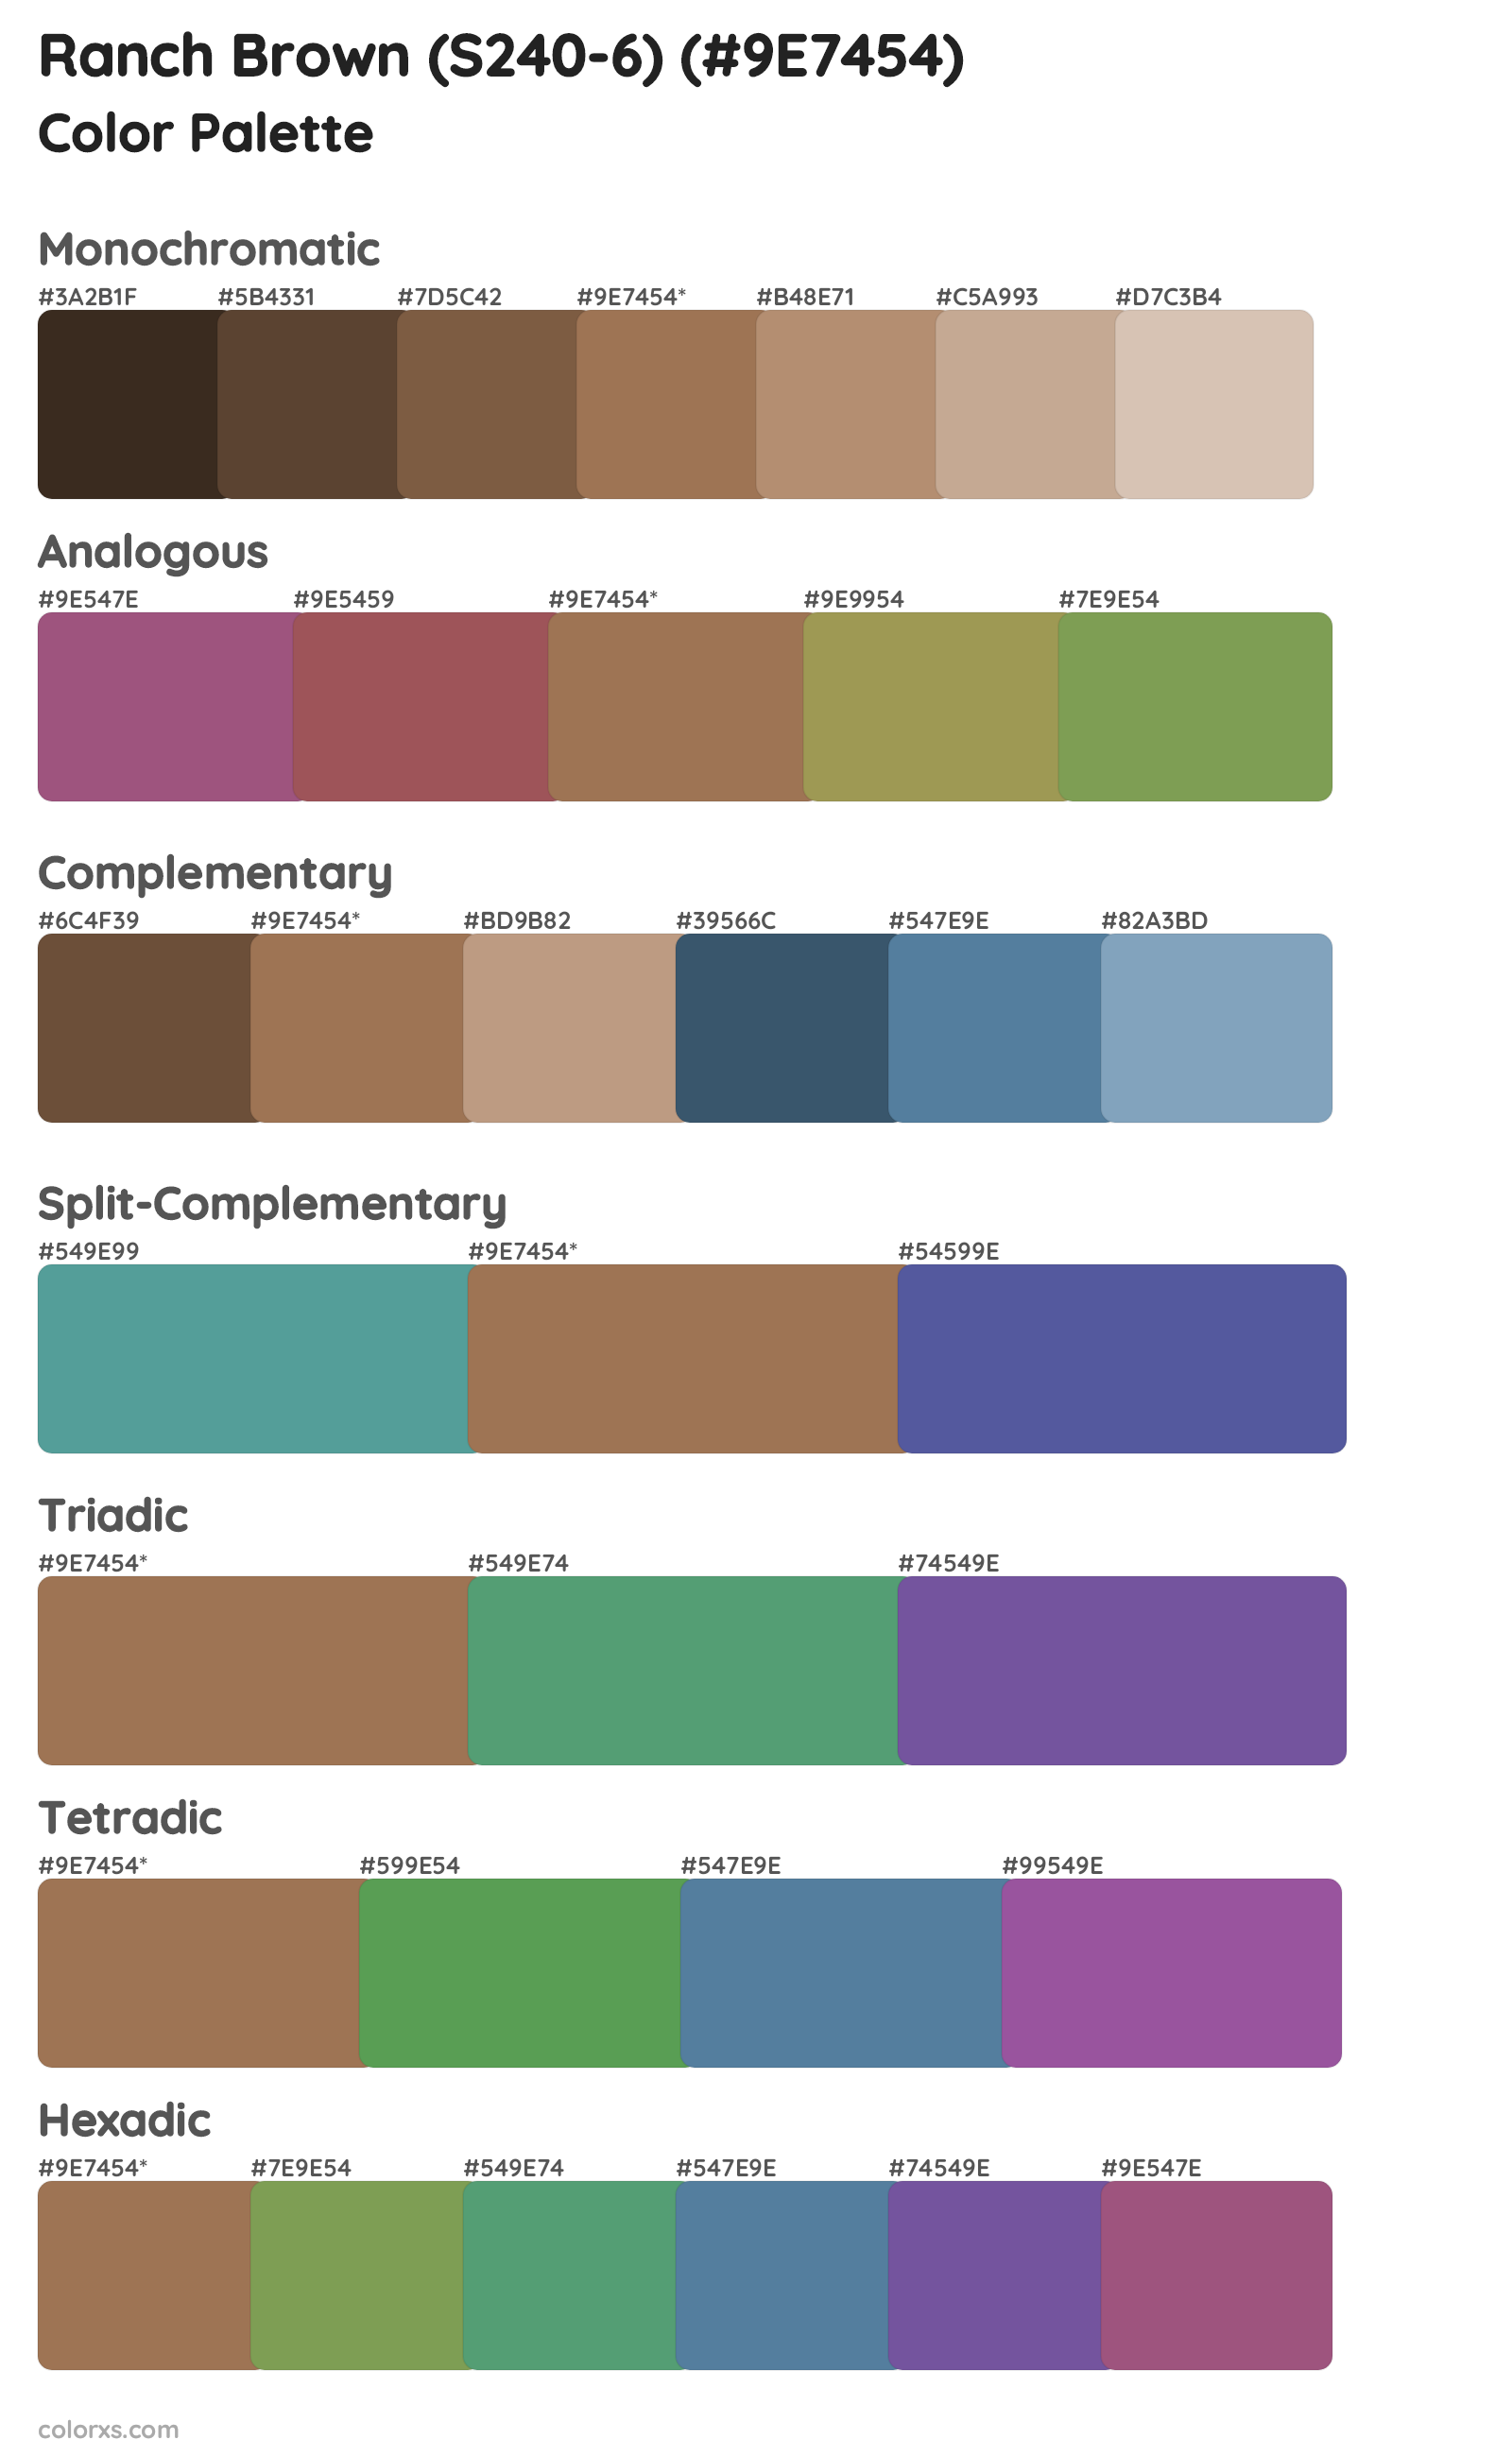 Ranch Brown (S240-6) Color Scheme Palettes